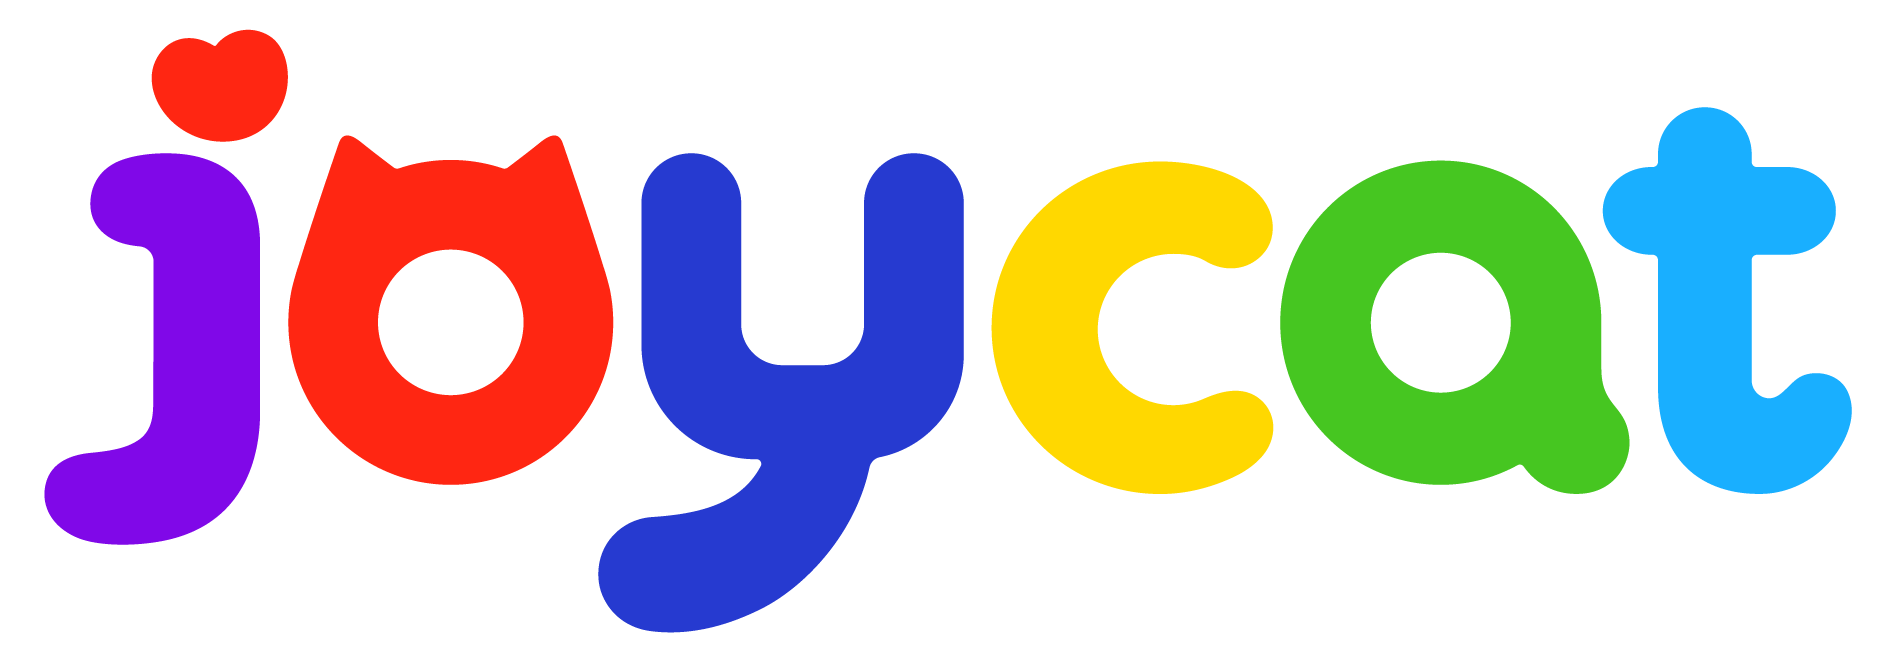 JoyCat